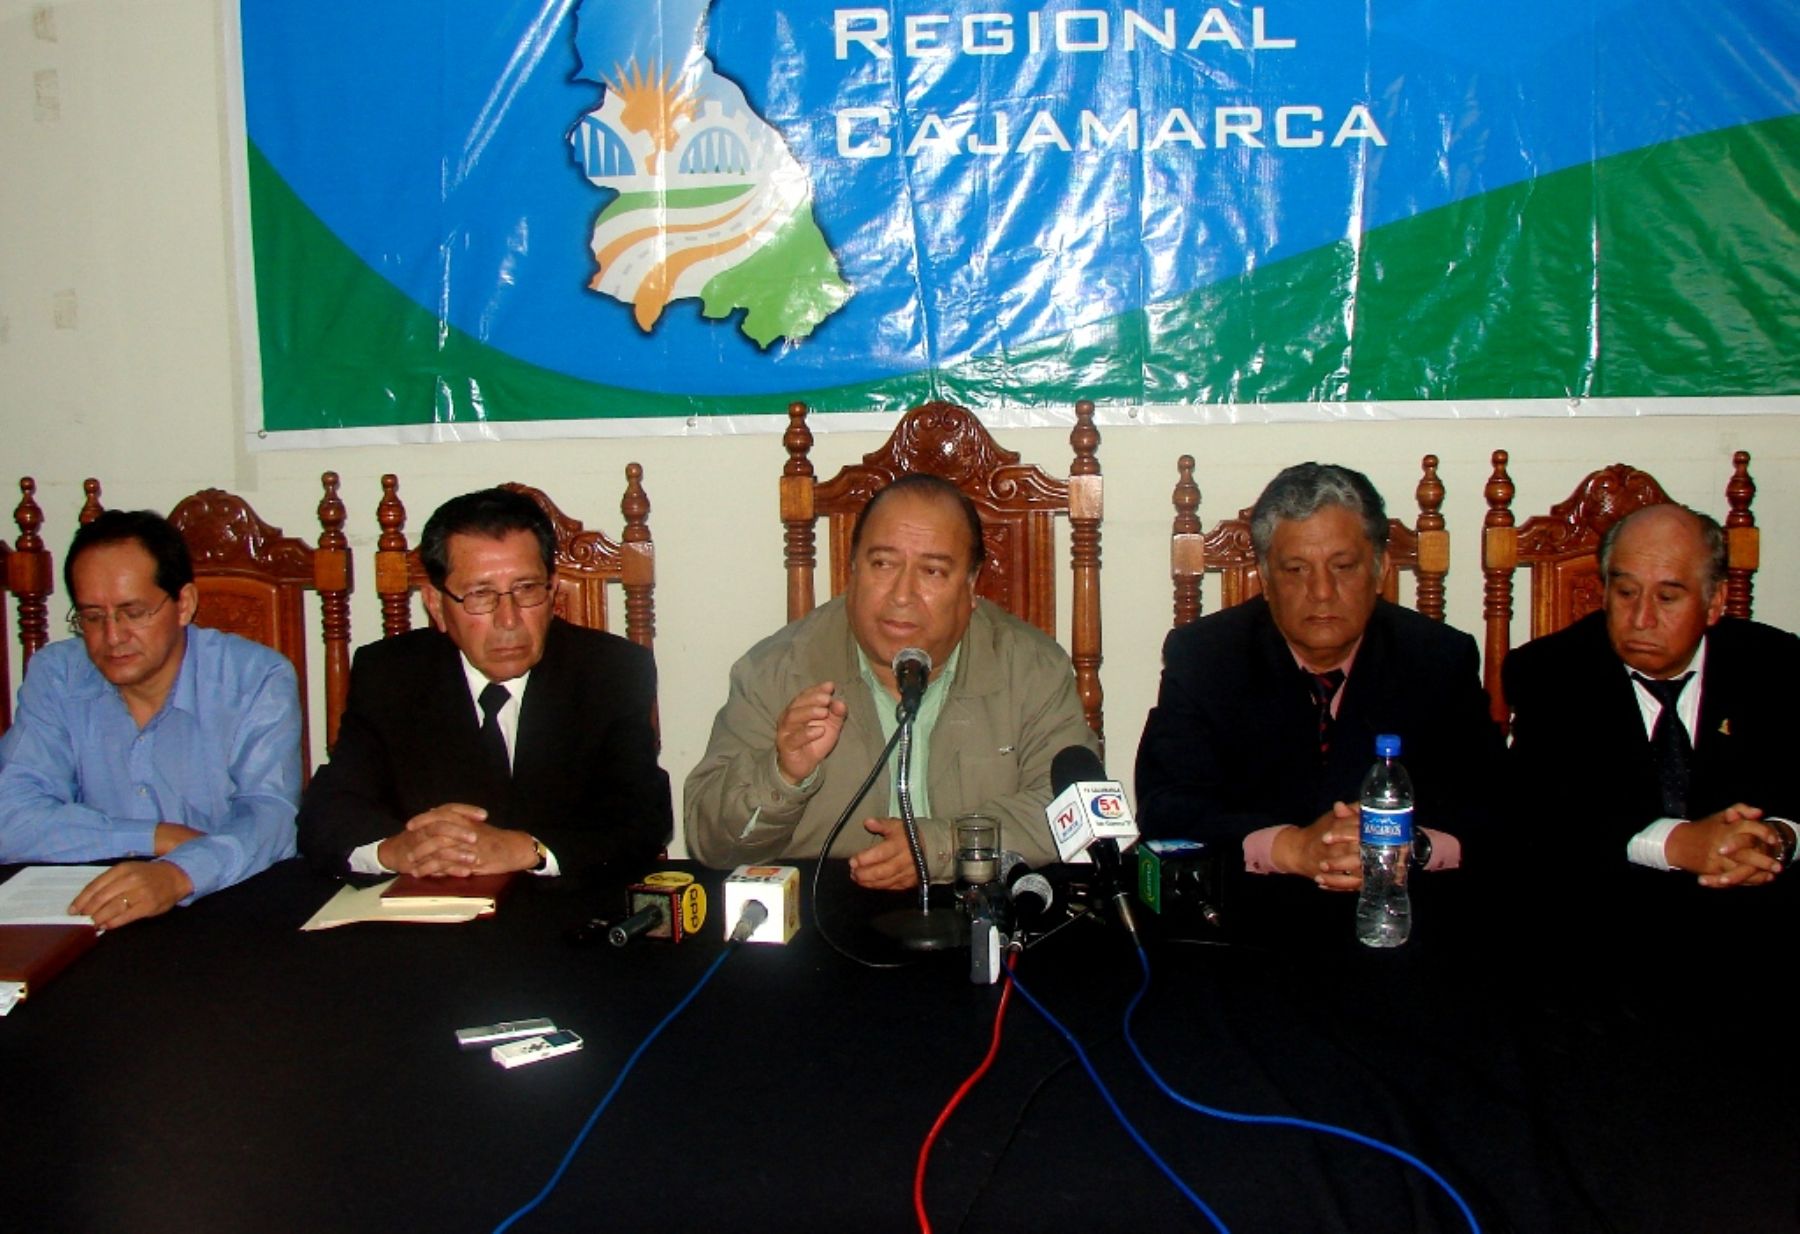 El presidente regional de Cajamarca, Jesús Coronel, dio marcha atrás y renunció a ir por la reelección. Foto: ANDINA / Eduard Lozano.